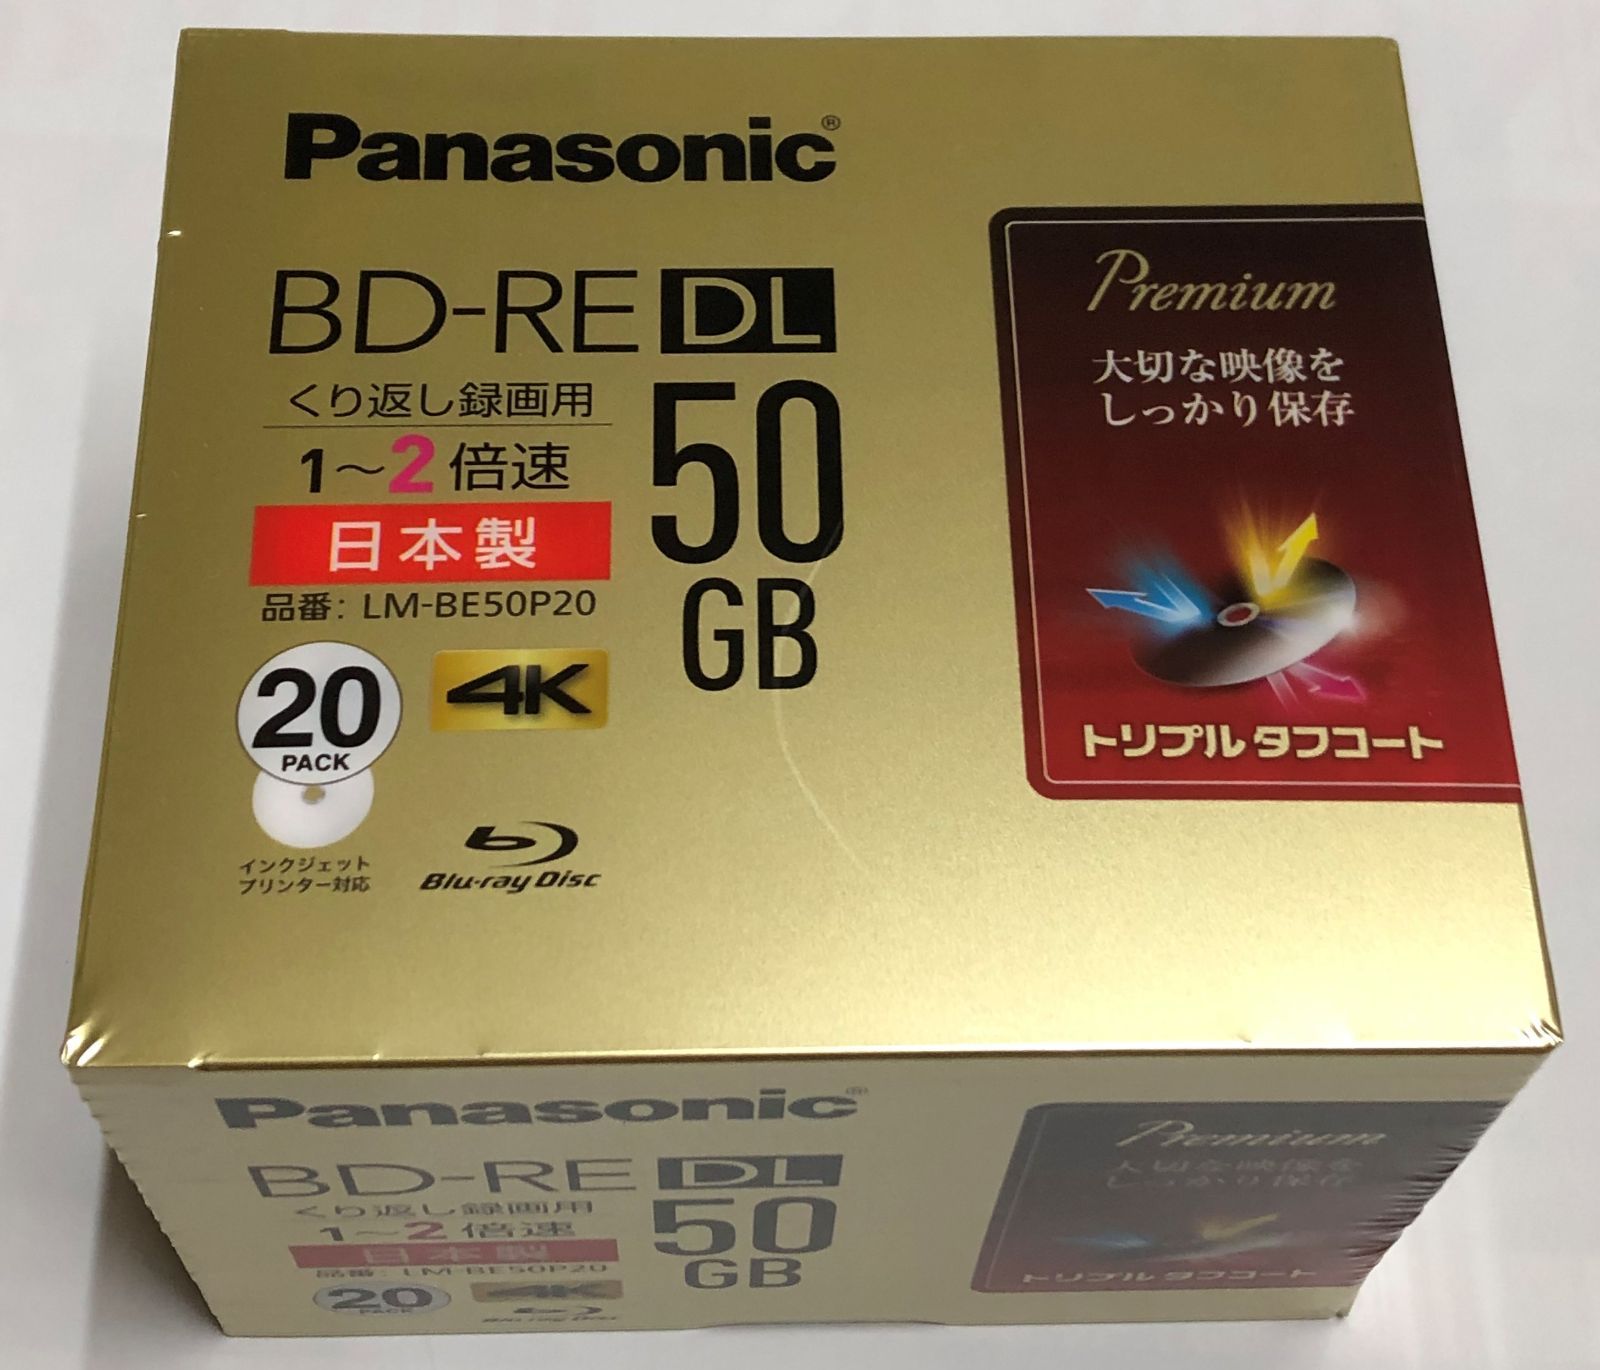 ☆BD-RE DL 50GB 20枚☆ ブルーレイディスク☆パナソニック - メルカリ